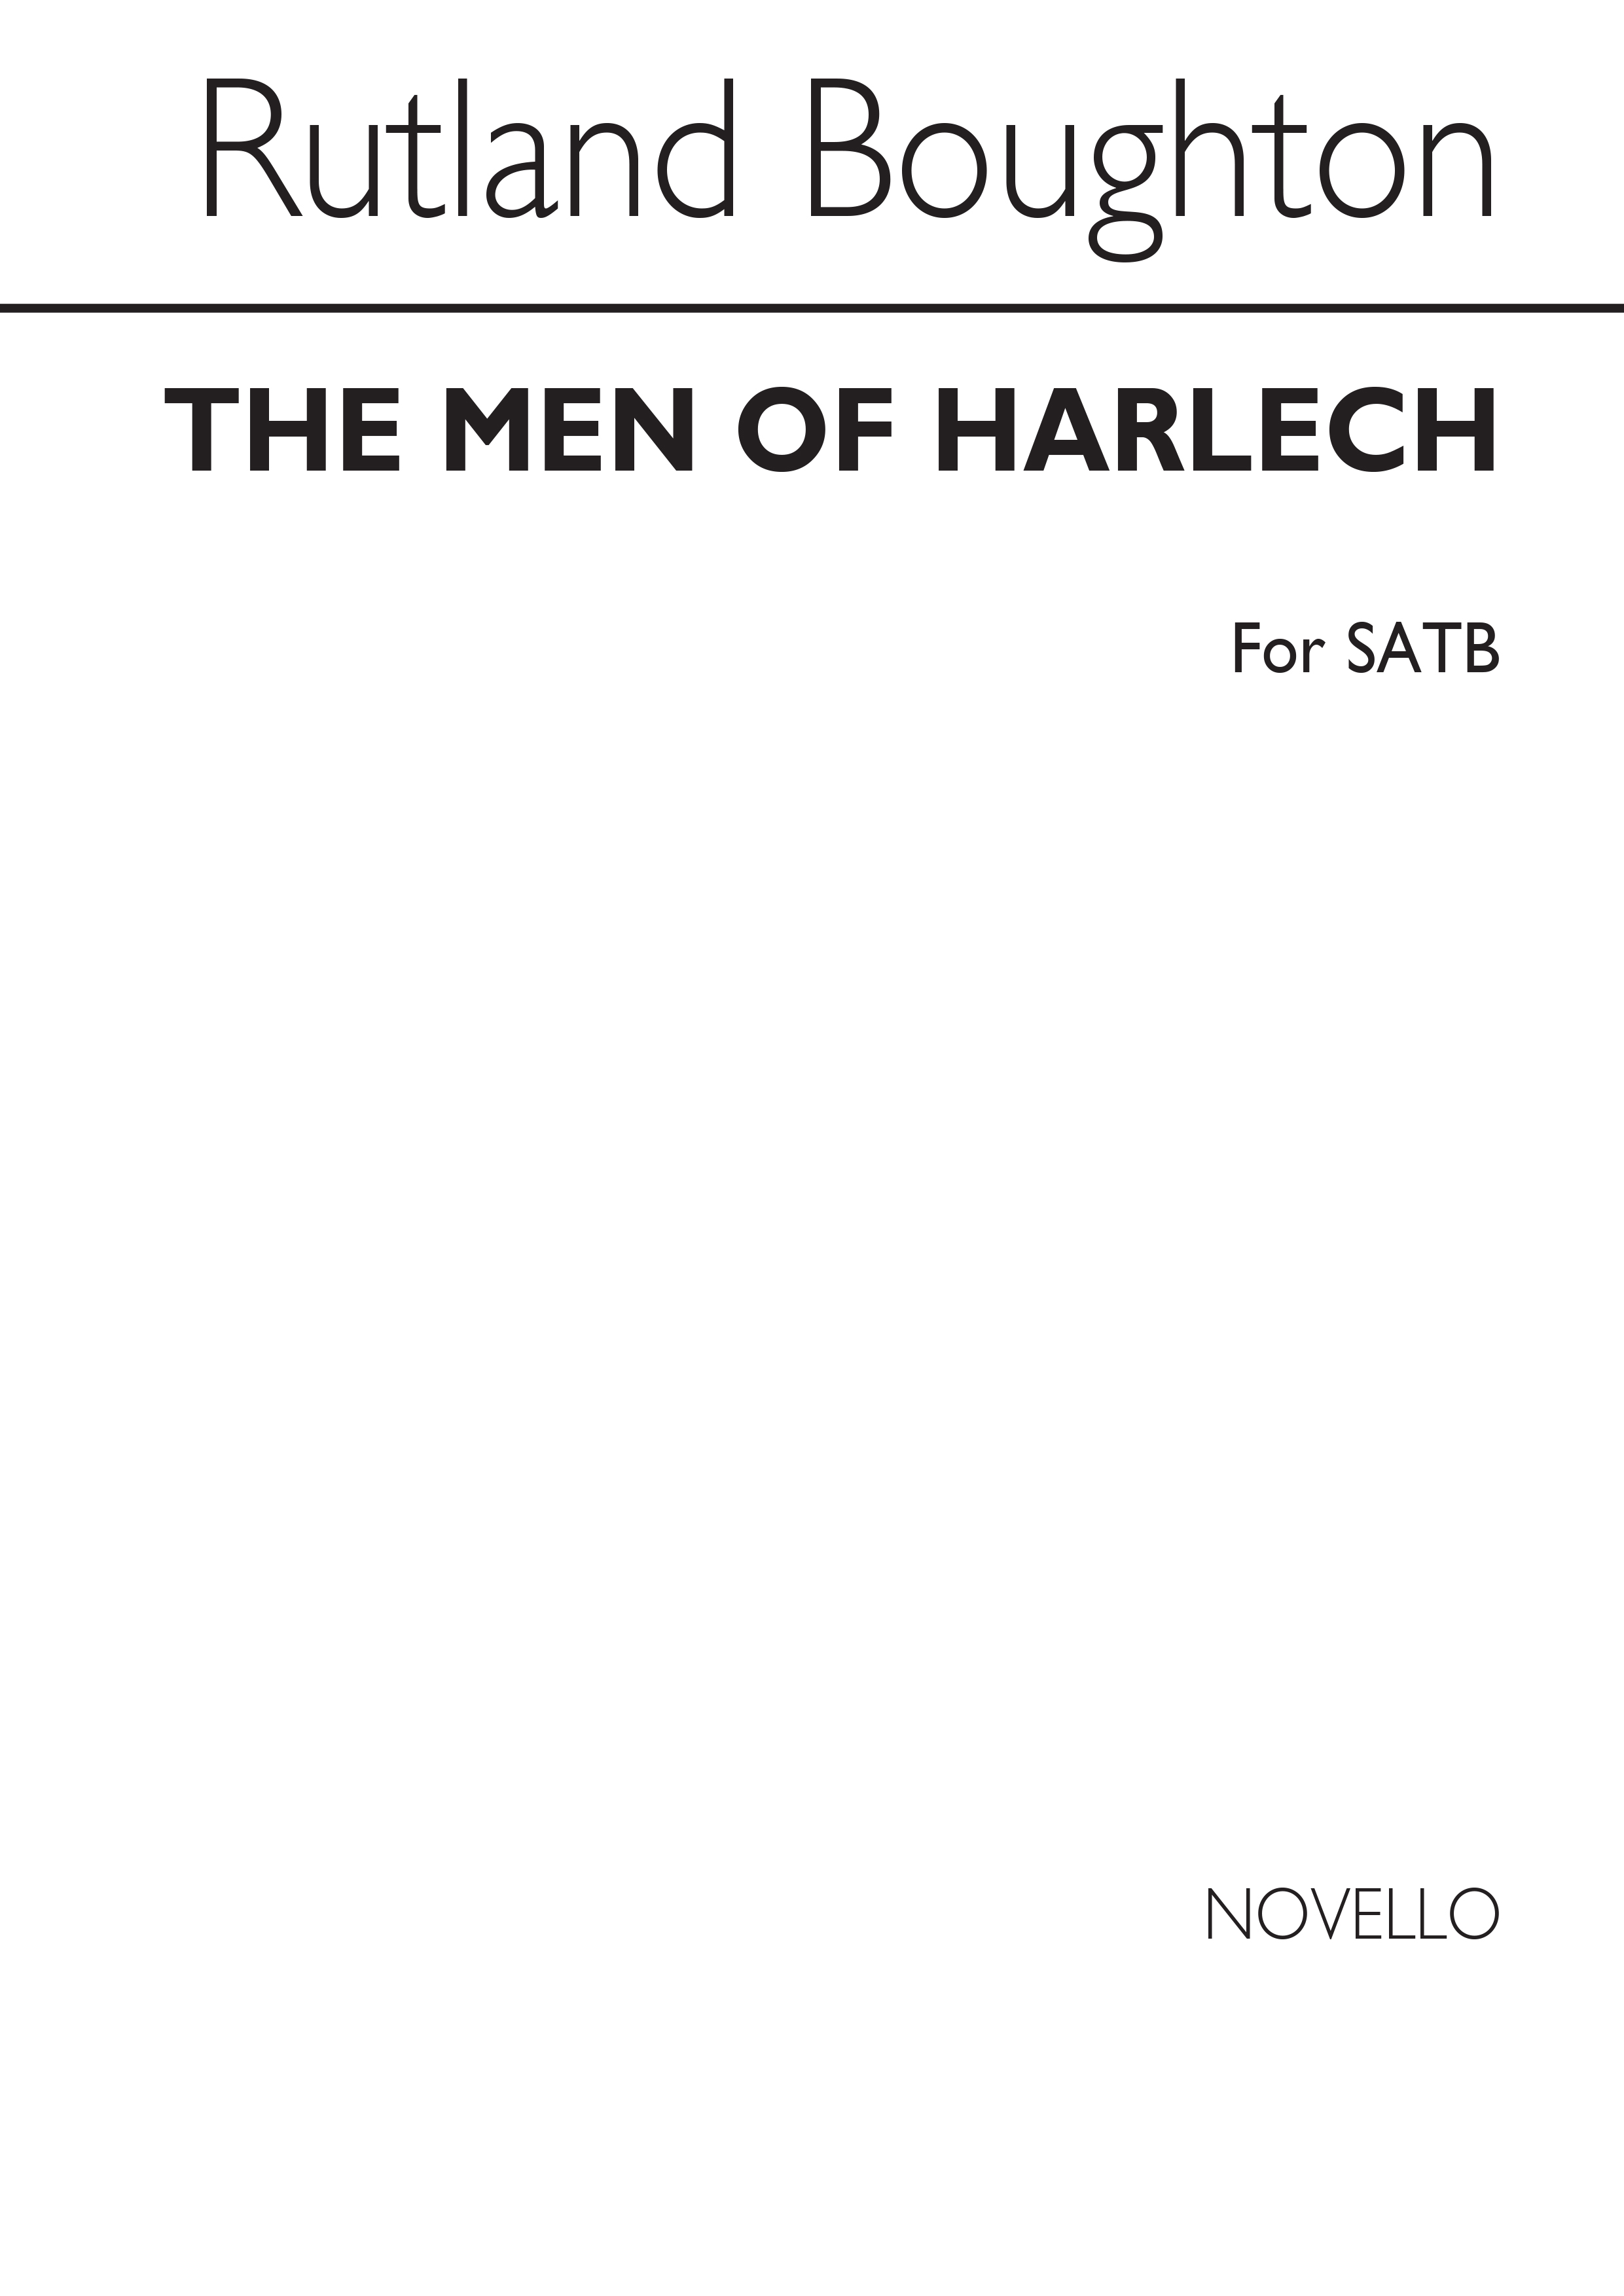 Rutland Boughton: The Men Of Harlech